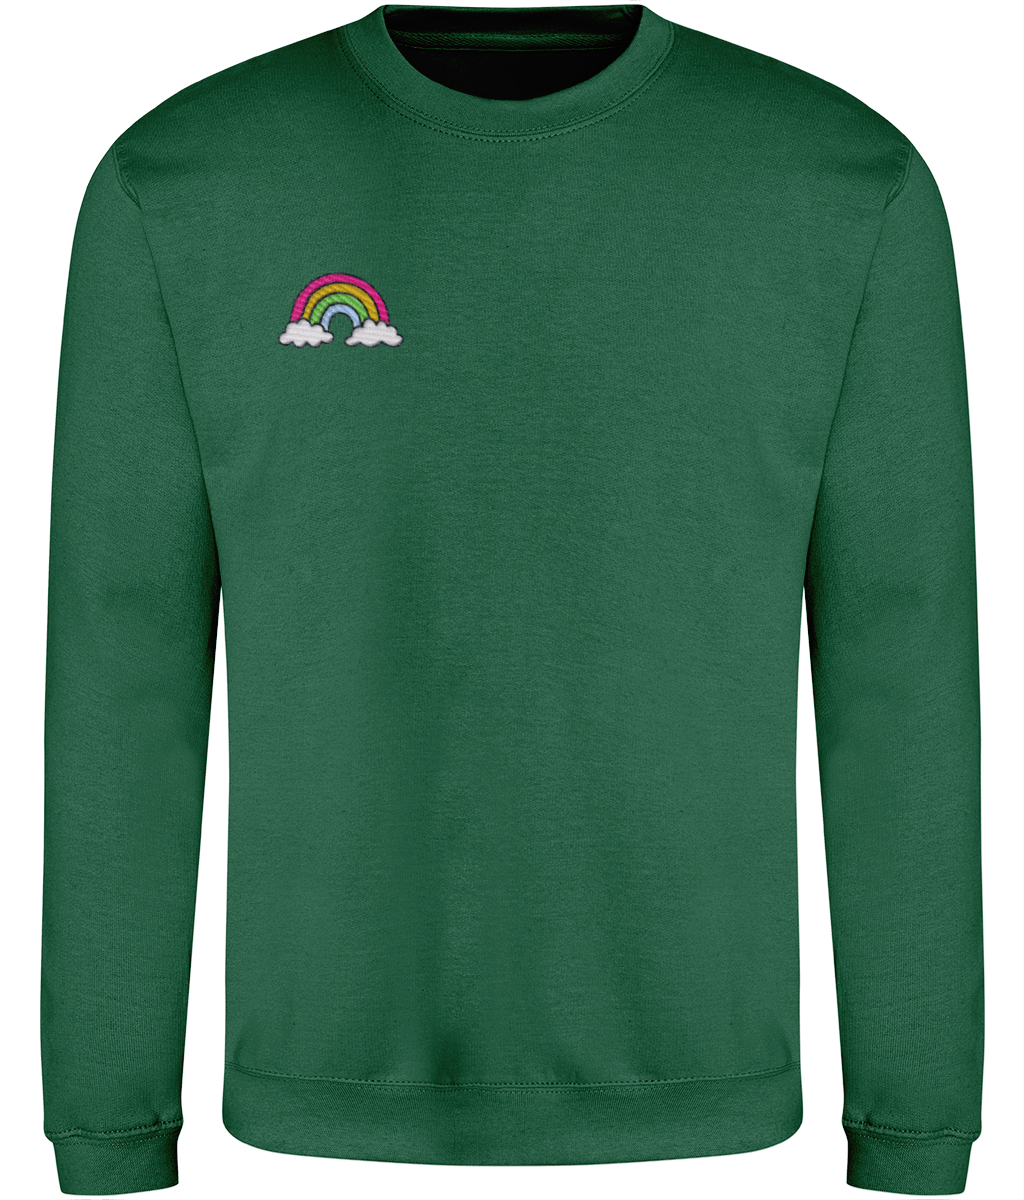 Rainbow - Embroidered - Adult Sweatshirt - Multi Colour Options